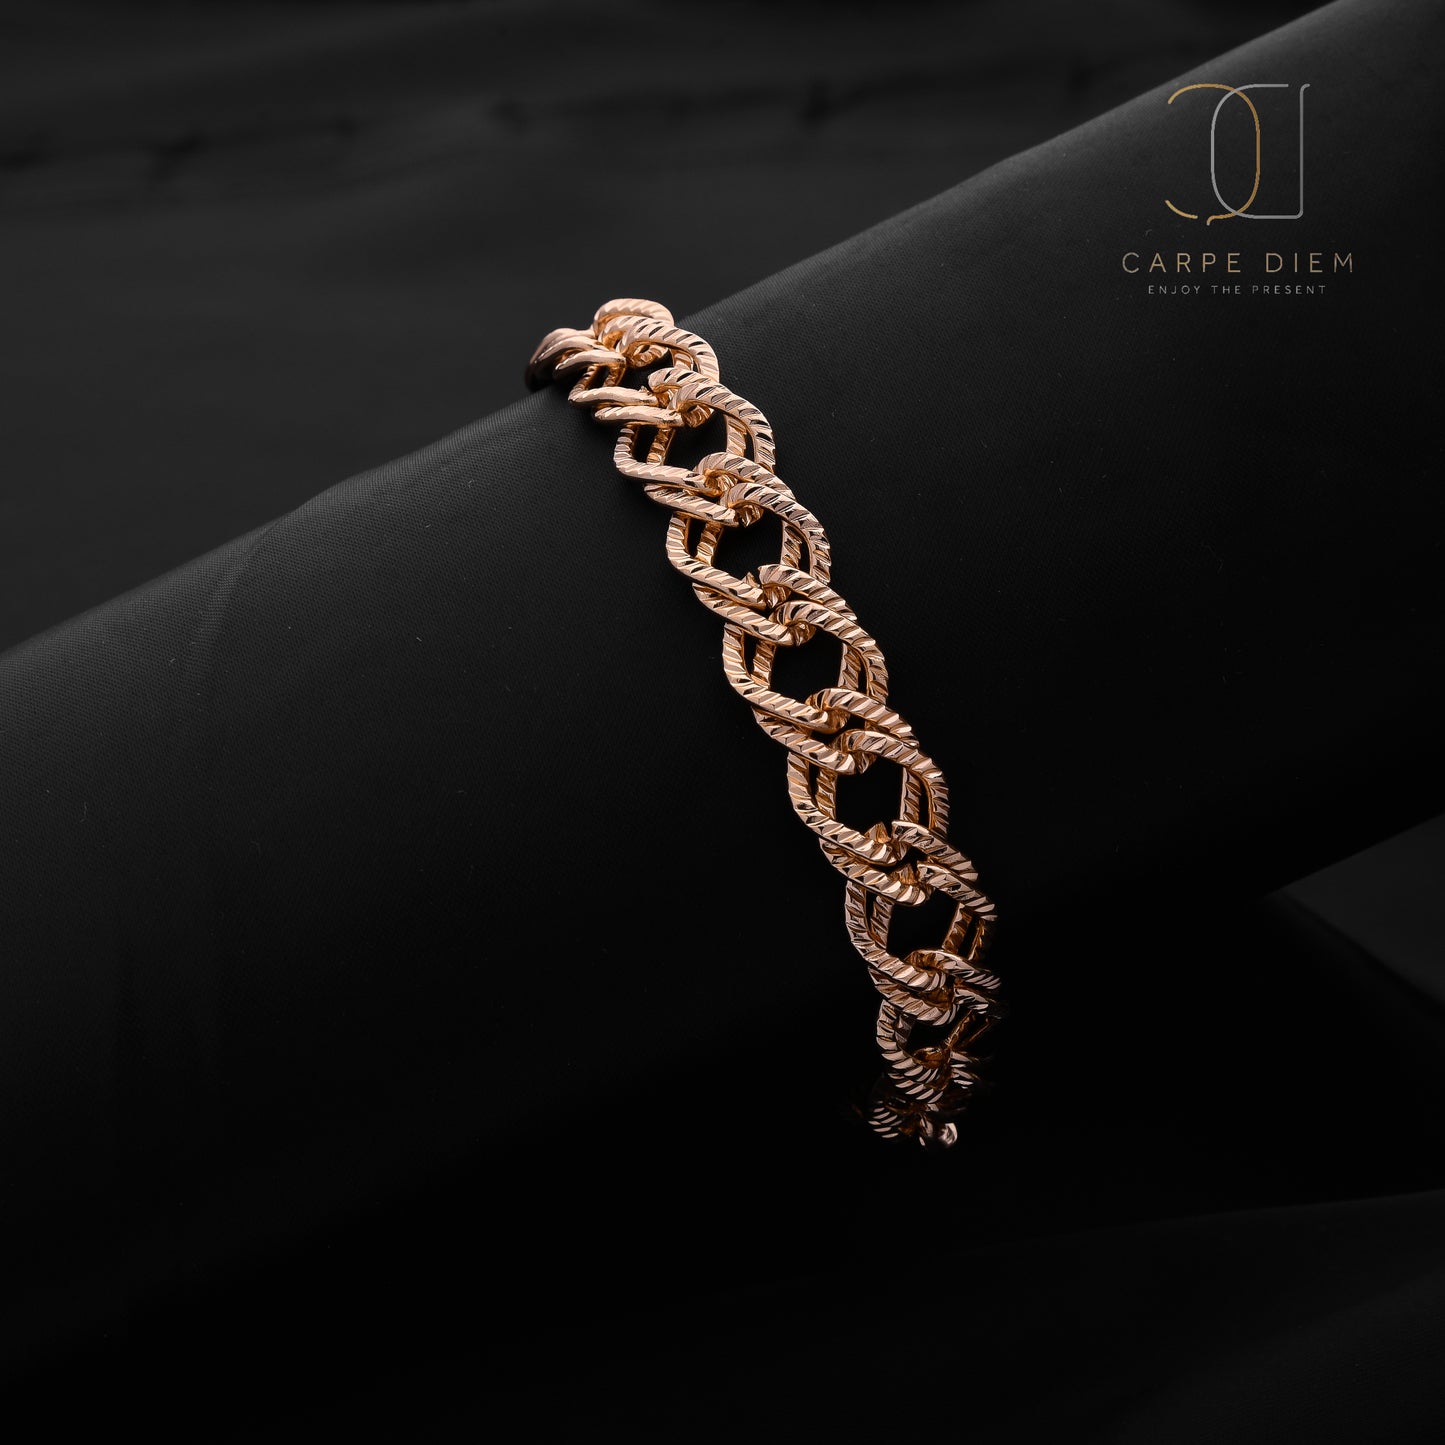 CDBR145- Gold plated Bracelet